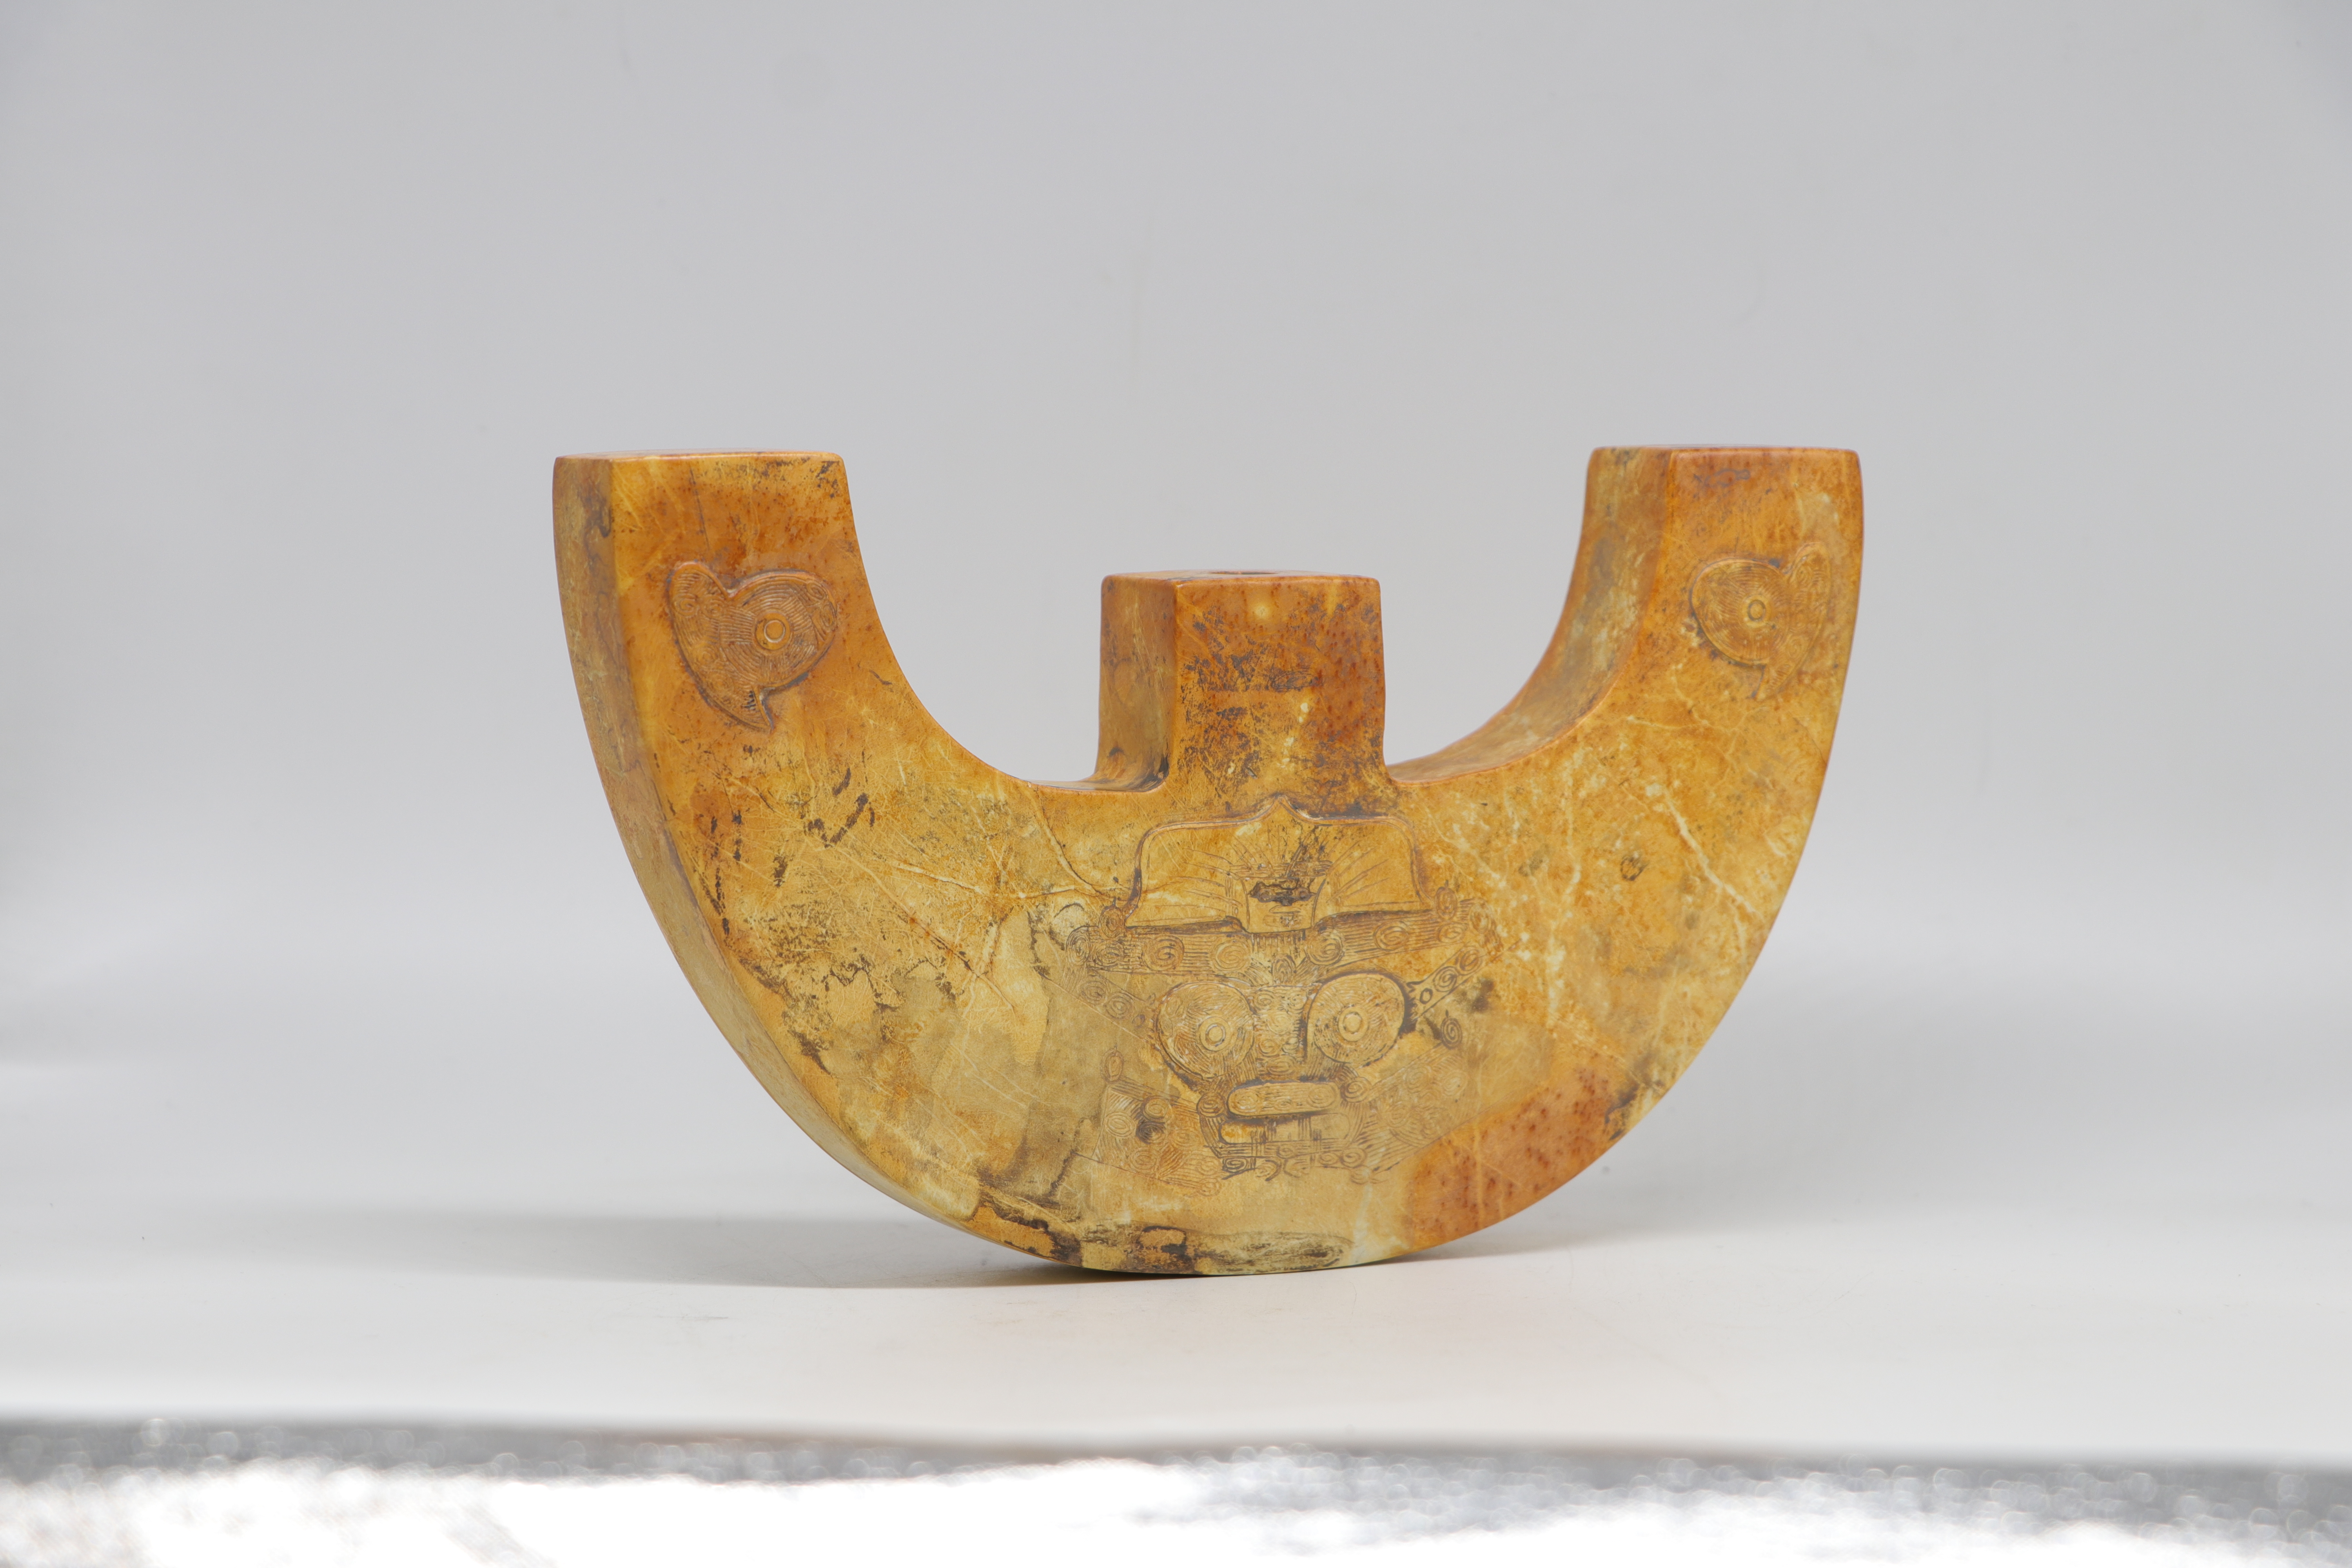 良渚文化神微纹玉三叉形器三叉形玉器是良渚文化玉器中造型较为独特的